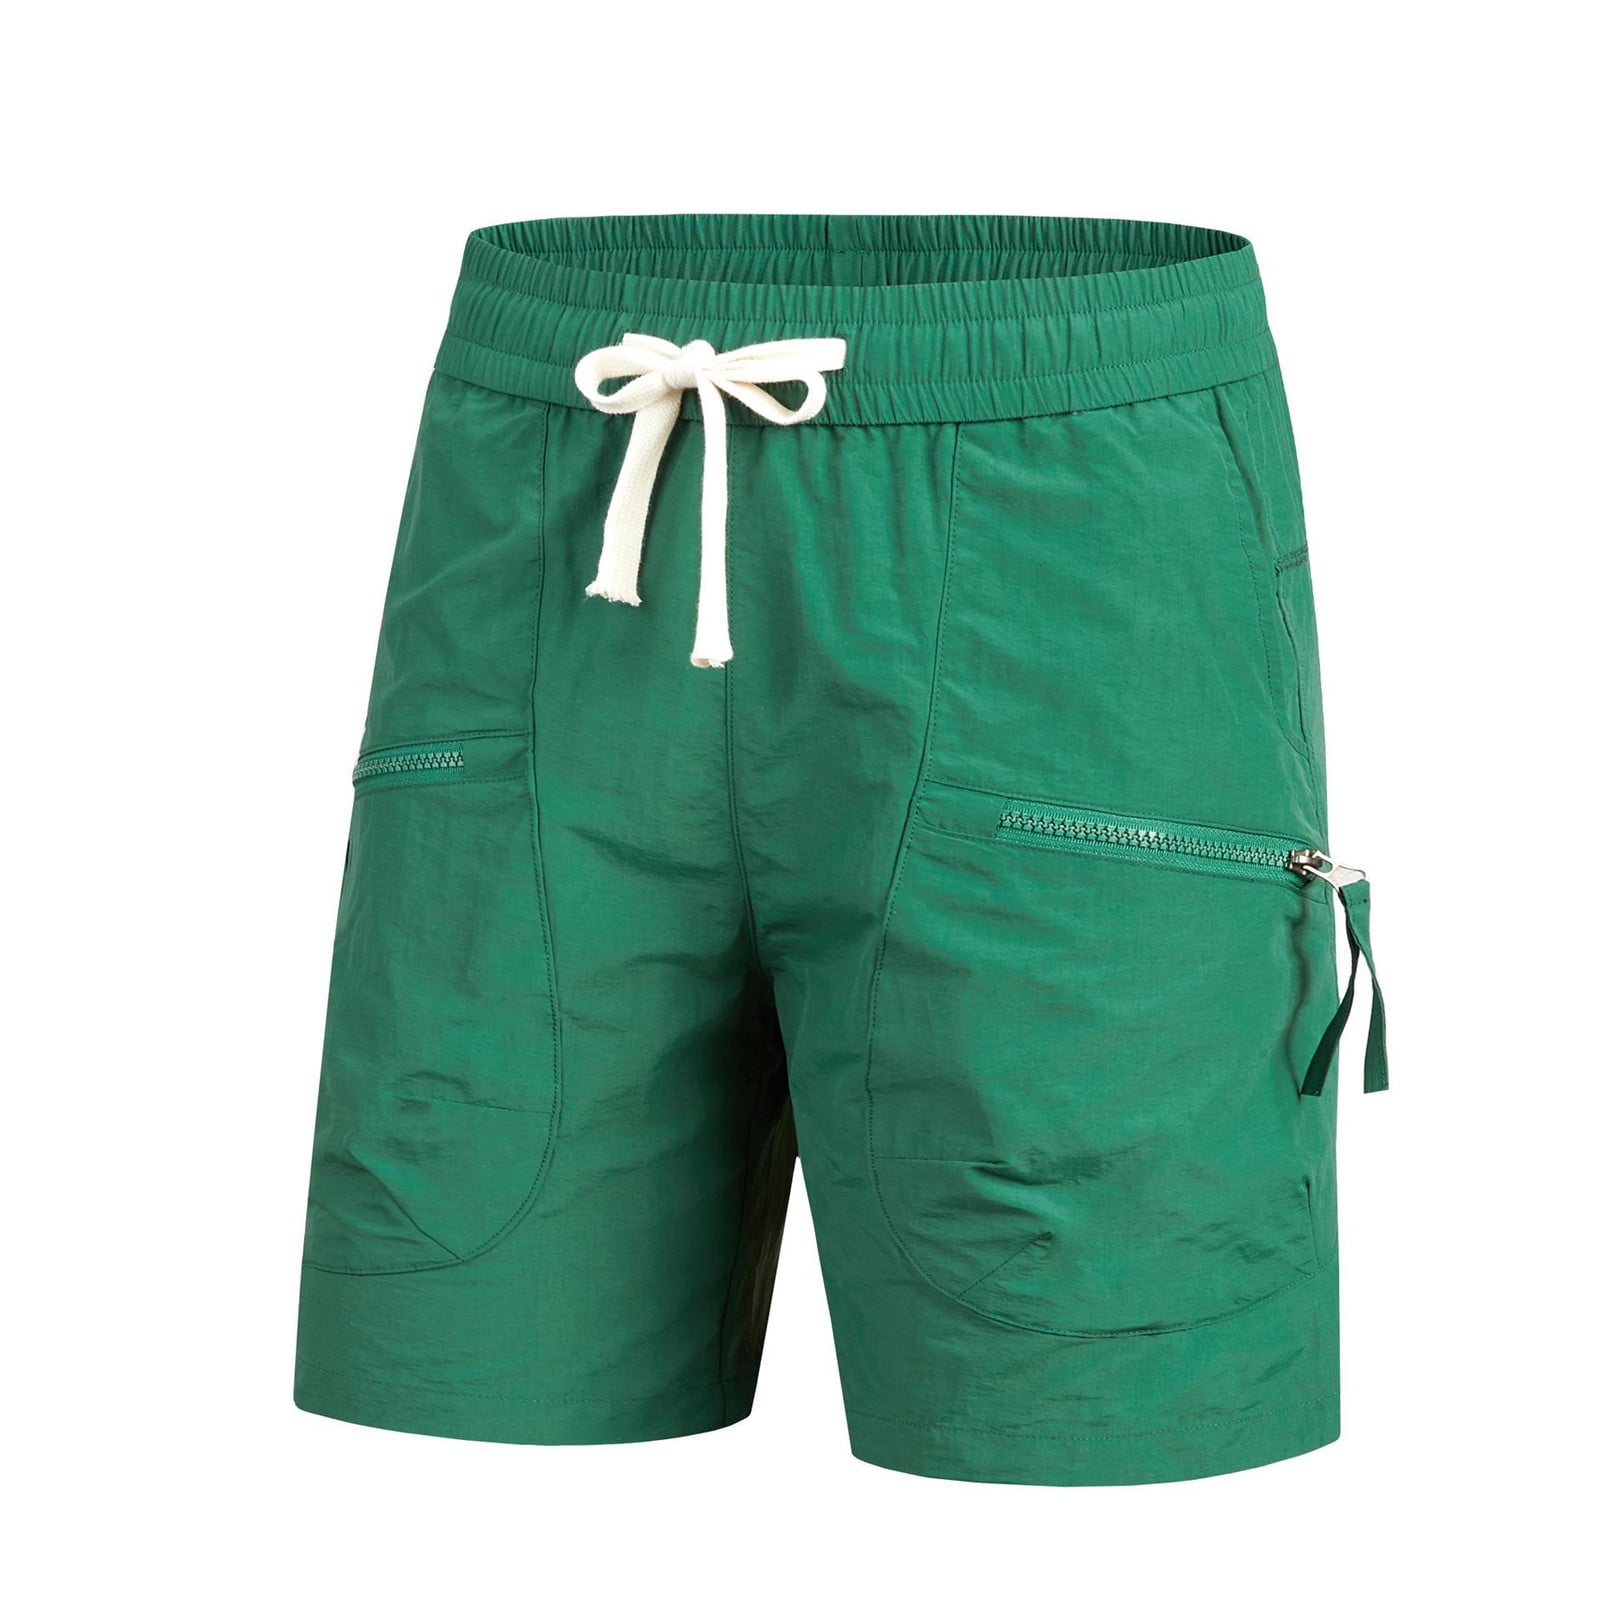 Men's New Casual Quick Drying Shorts Sports Quarter Pants - Walmart.com